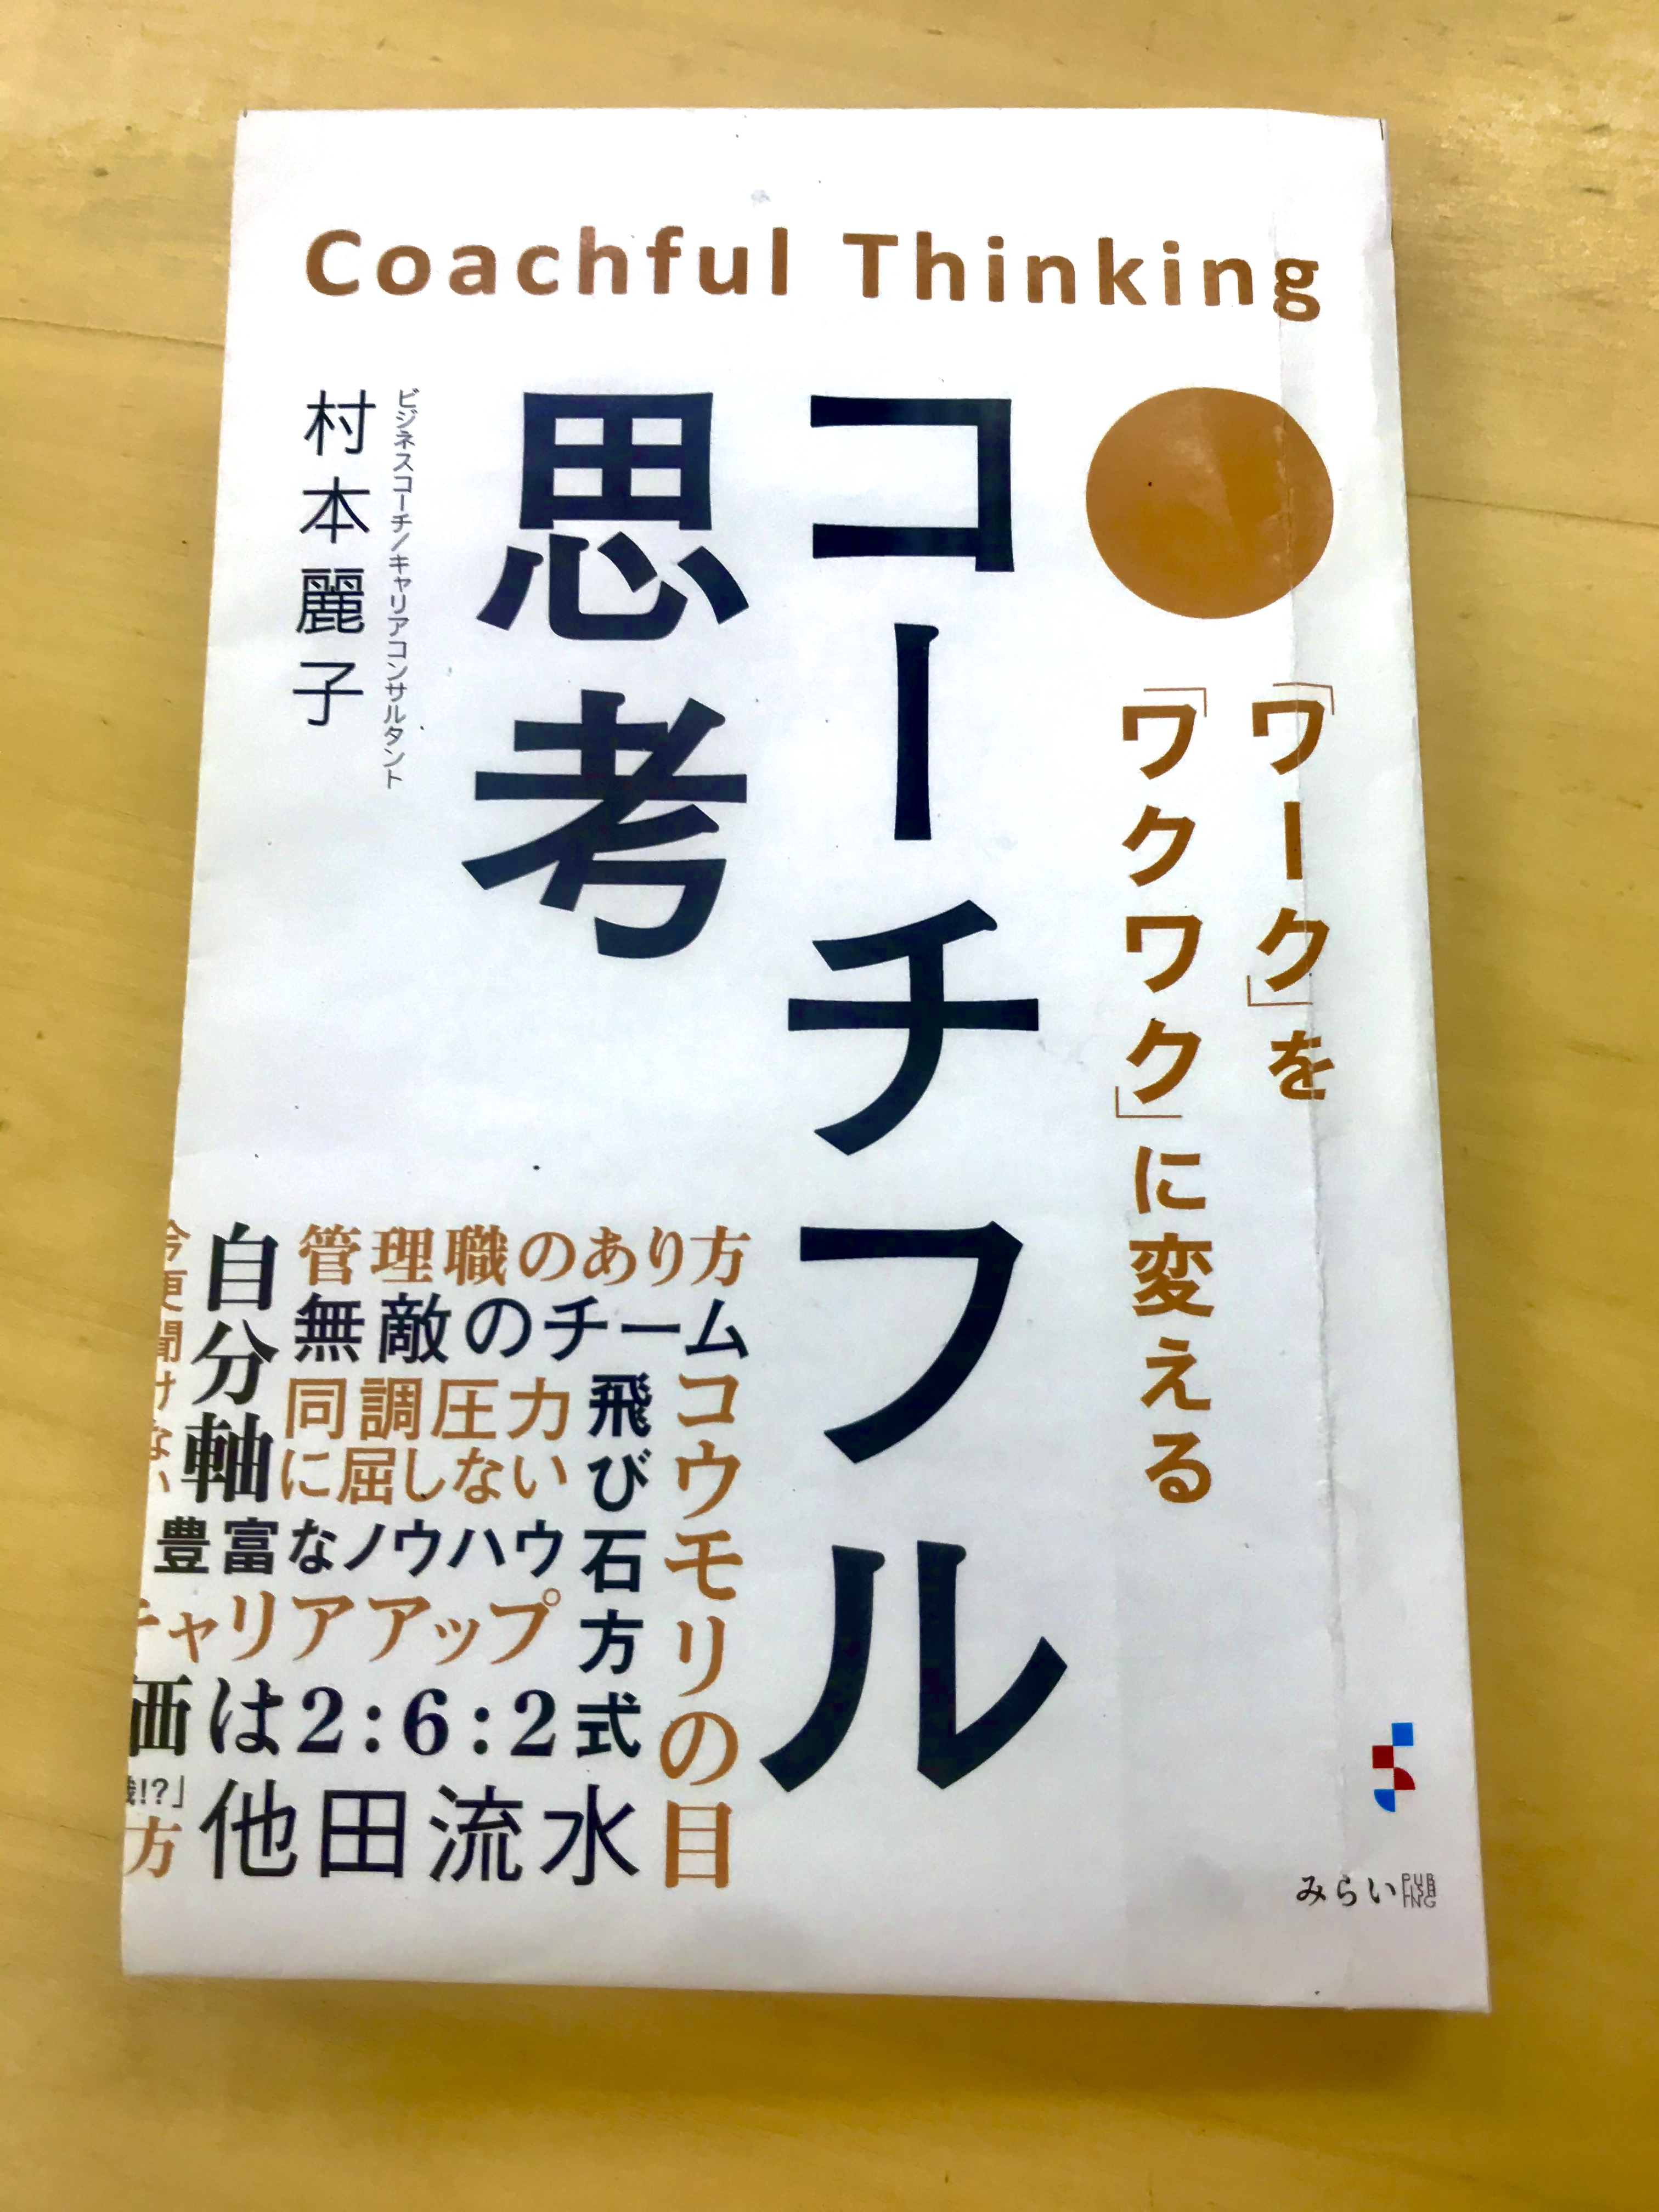 リストラ管理職のための「コーチフル思考」 | 札幌でコーチング・カウンセリングなら村本麗子コーチの札幌ヒトラボ